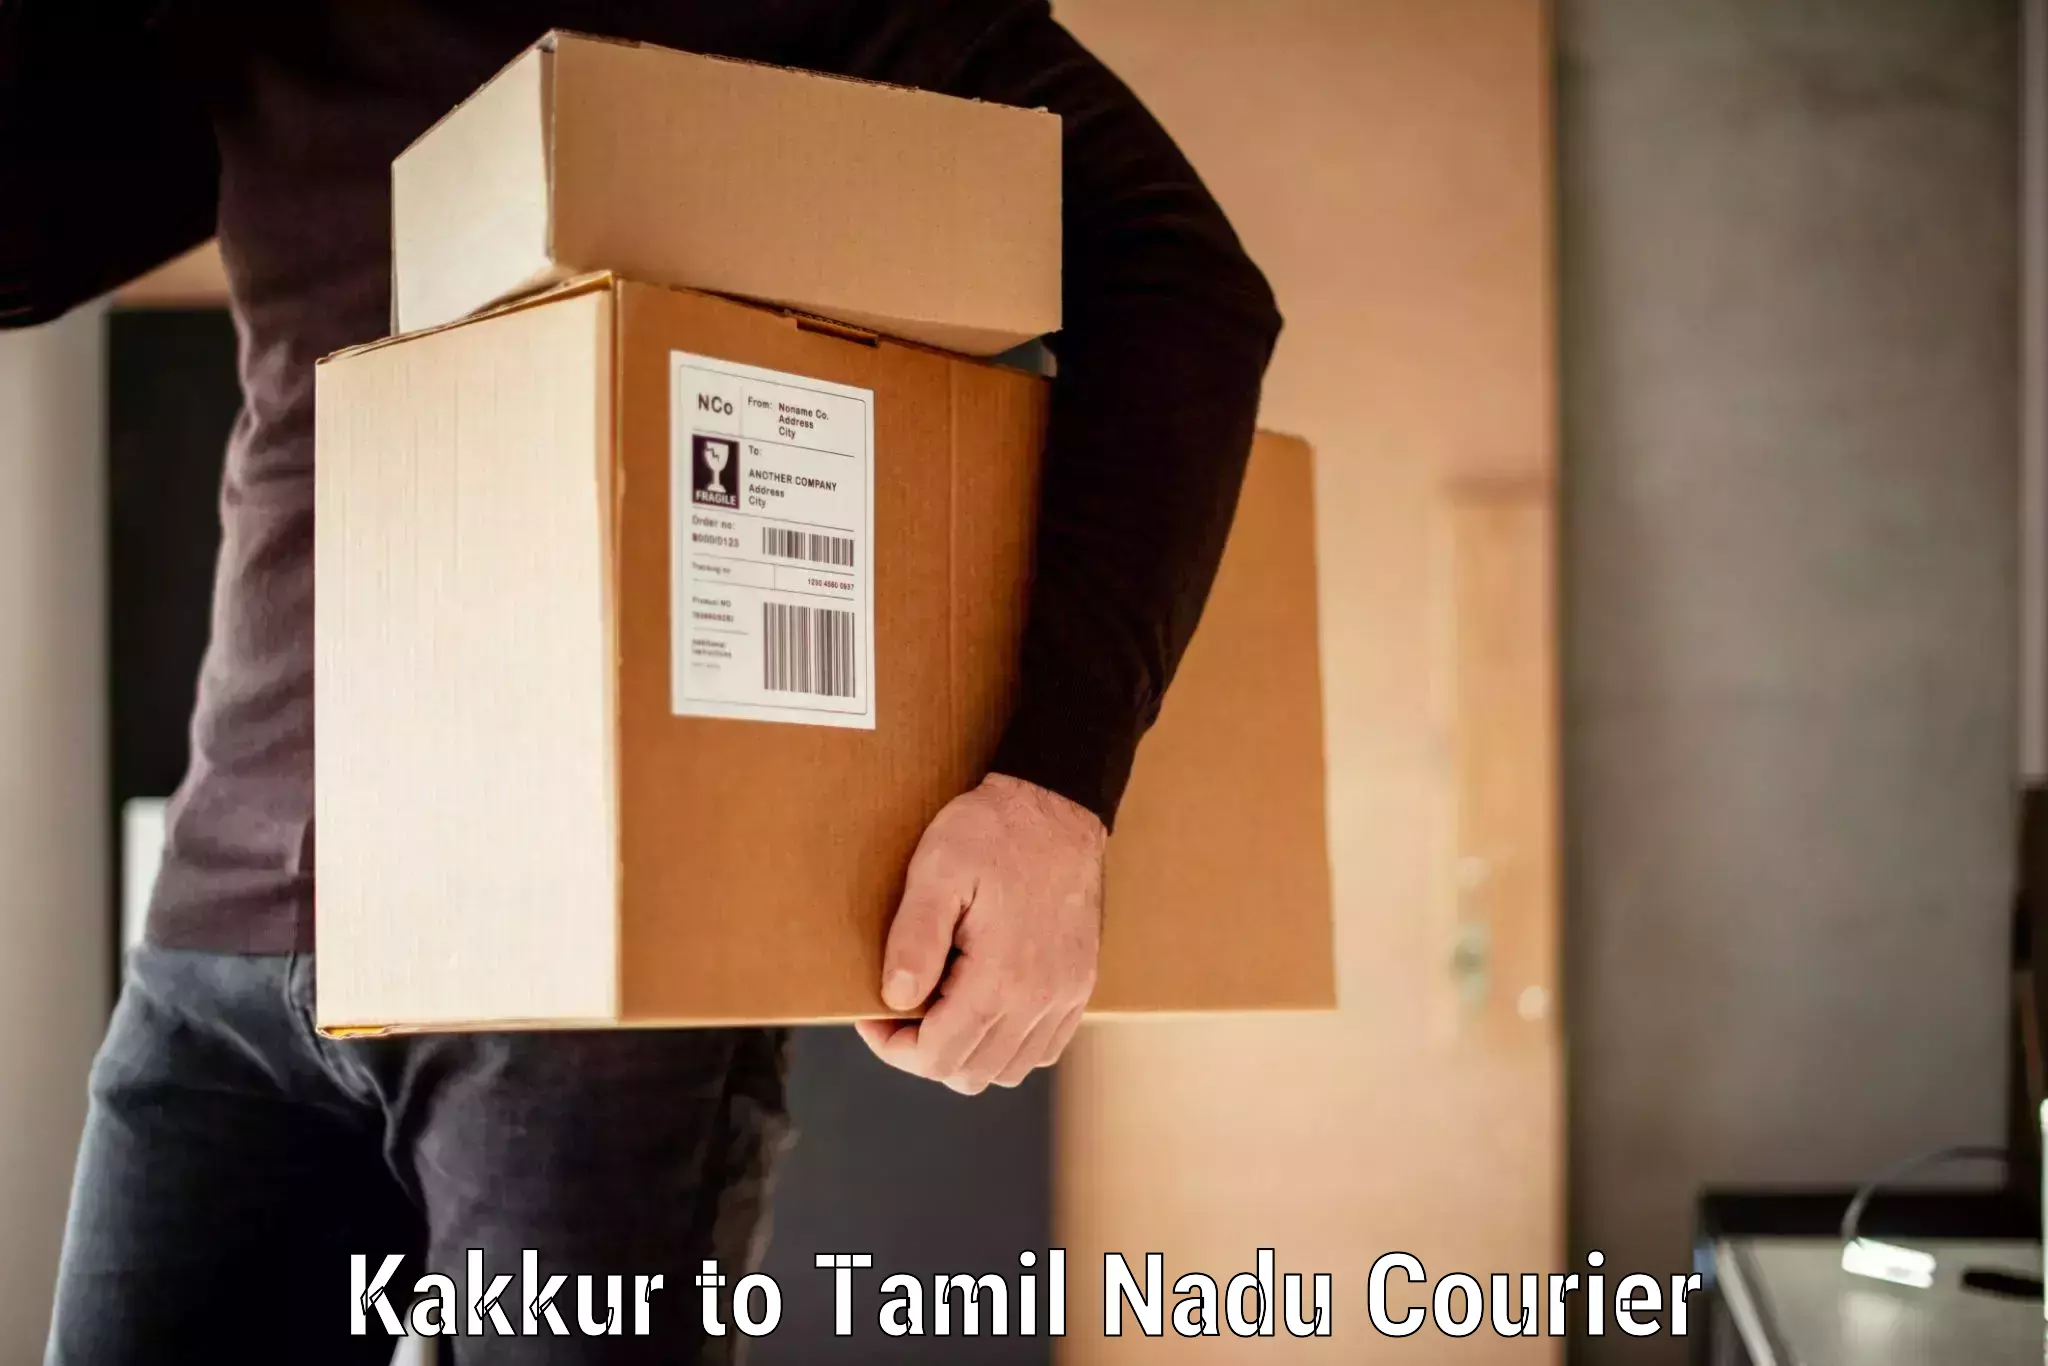 Personalized luggage shipping in Kakkur to Panruti